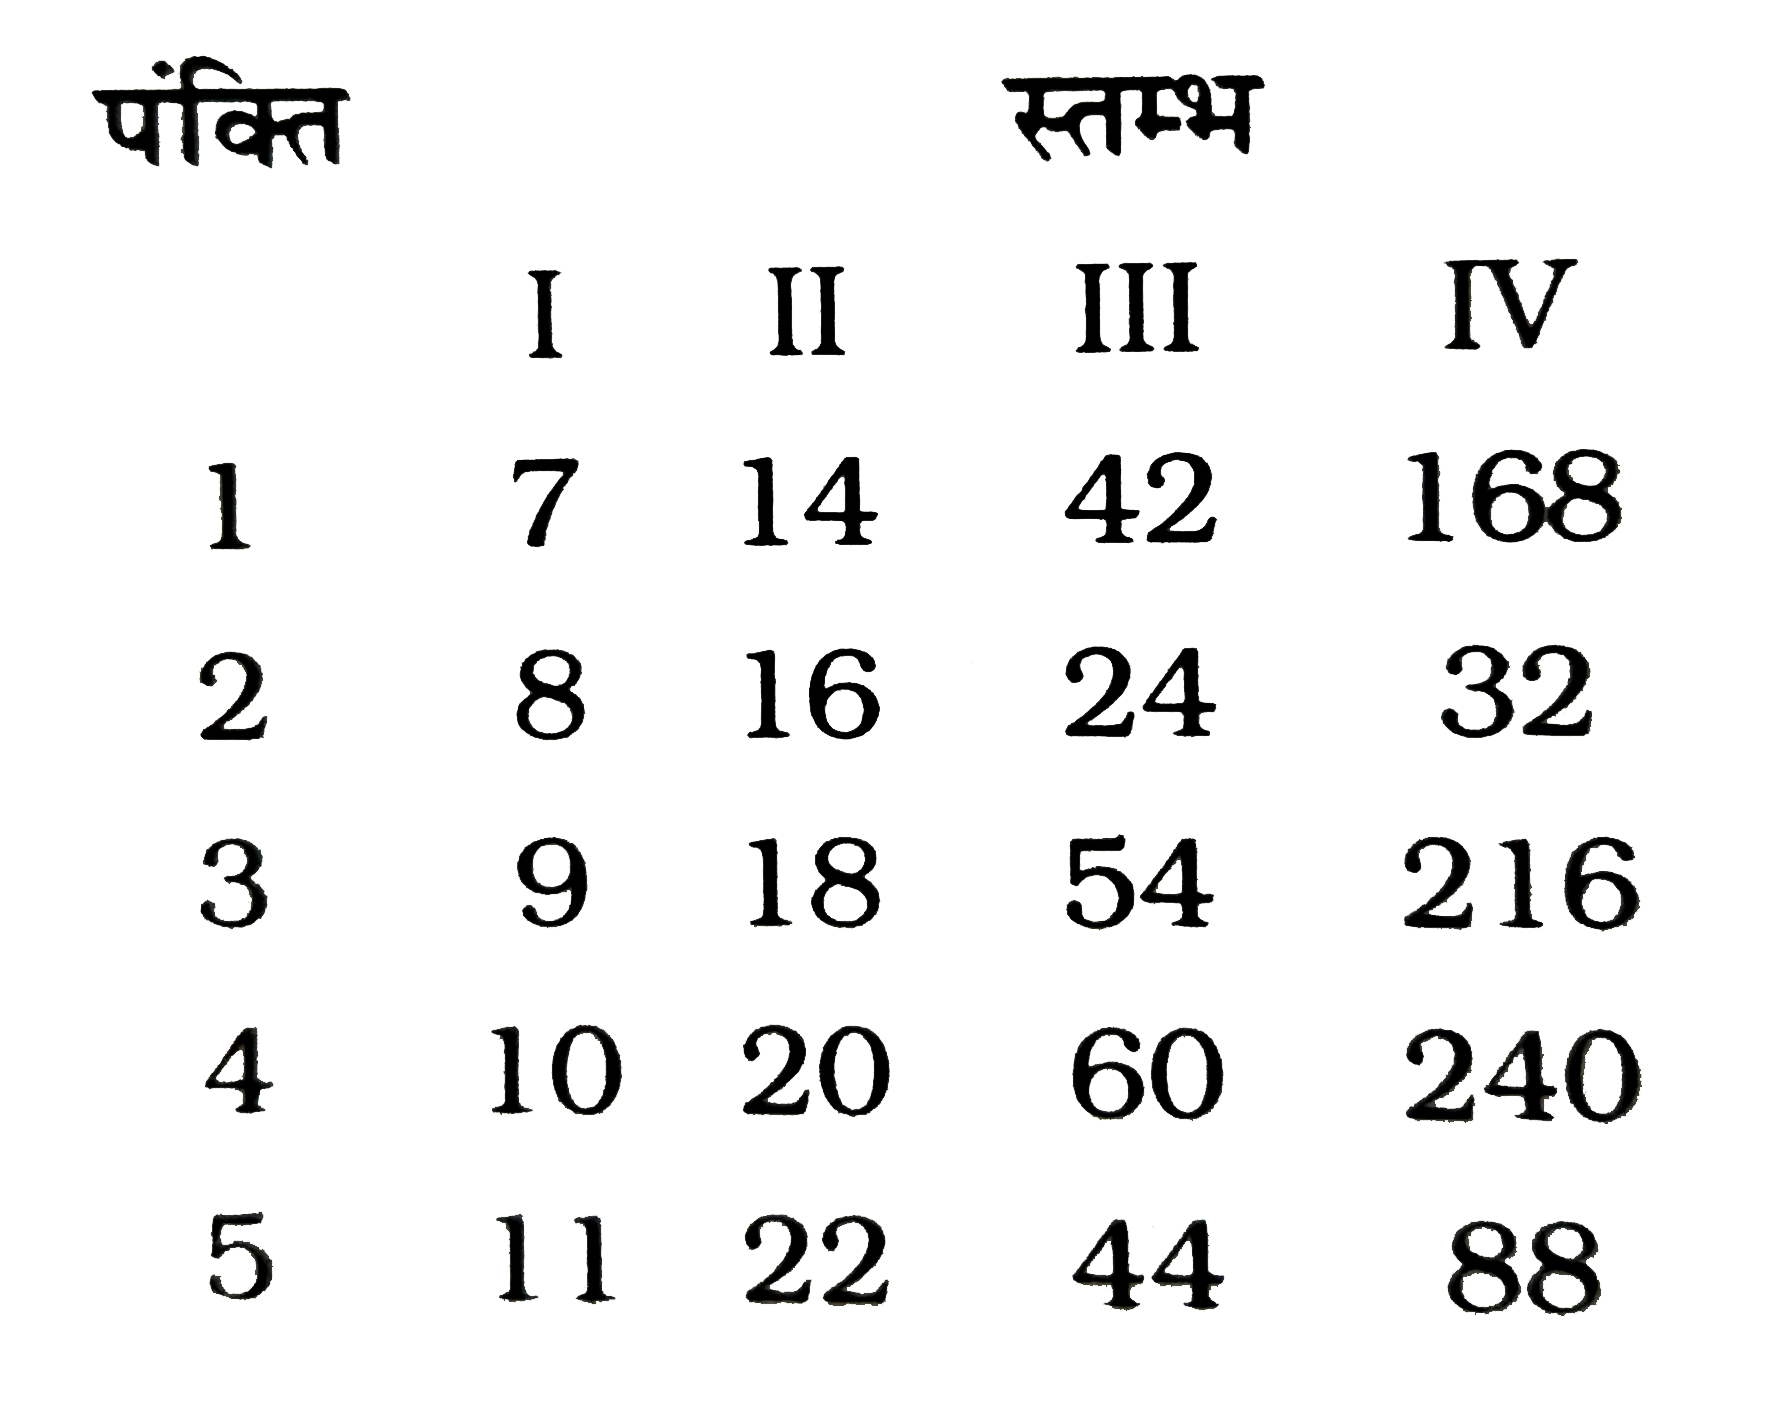 नीचे कुछ संख्याएँ भिन्न-भिन्न पंक्तियों /स्तम्भों में दी गई है । इनमे से कौन-सी पंक्तियाँ /स्तम्भ आपस में किसी प्रकार संबंधित /संबद्ध है ?